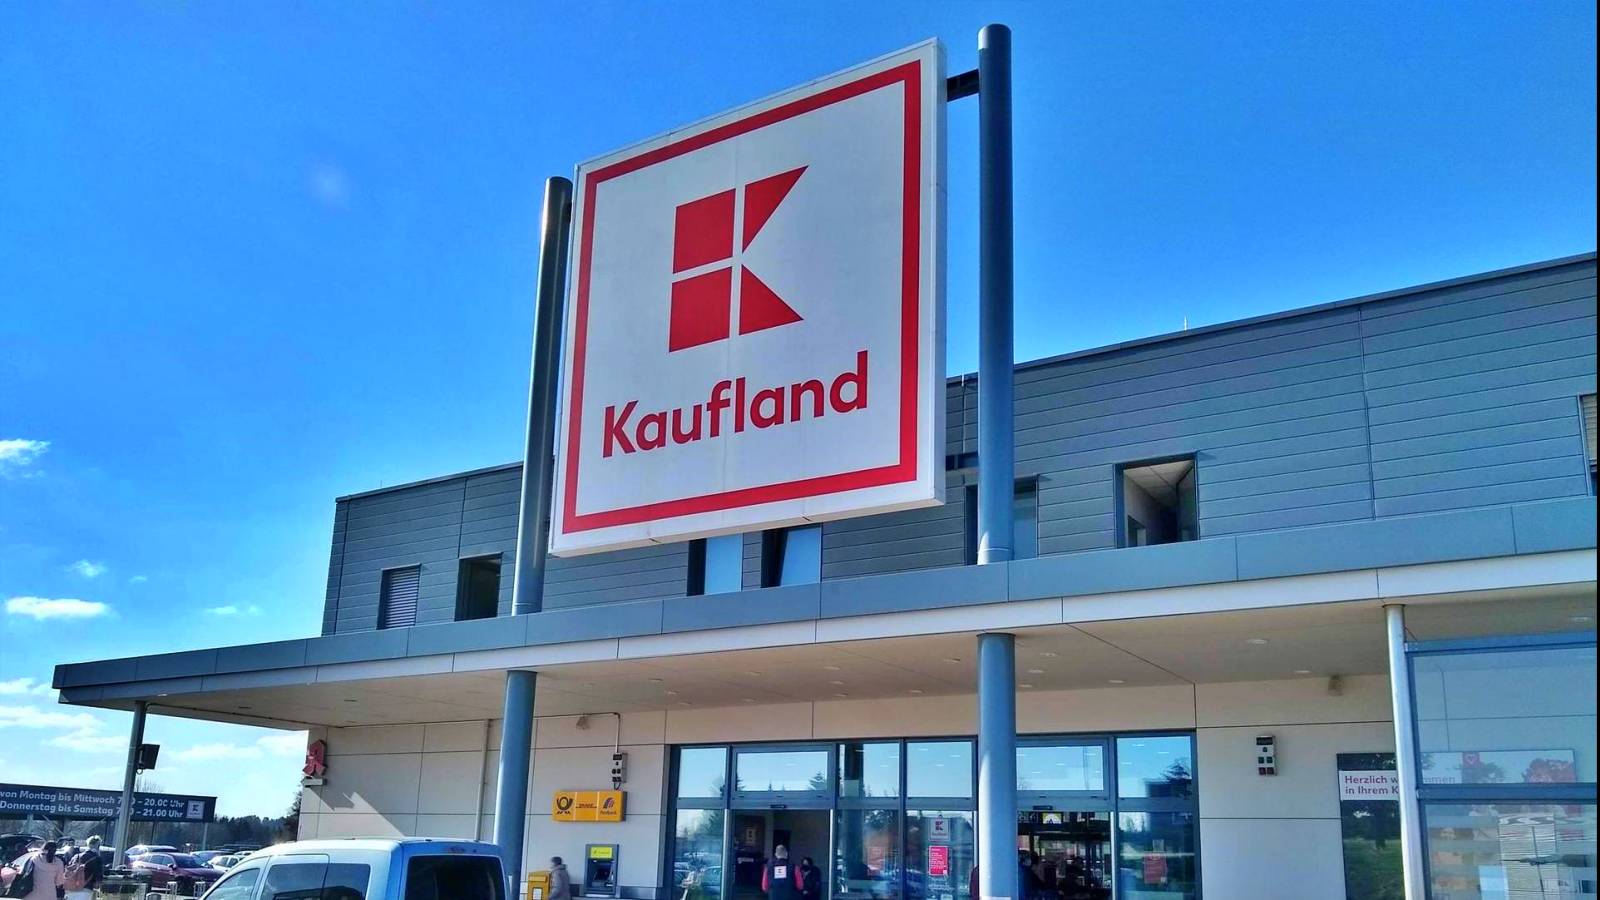 Kaufland Great News Los clientes no conocían a muchos rumanos